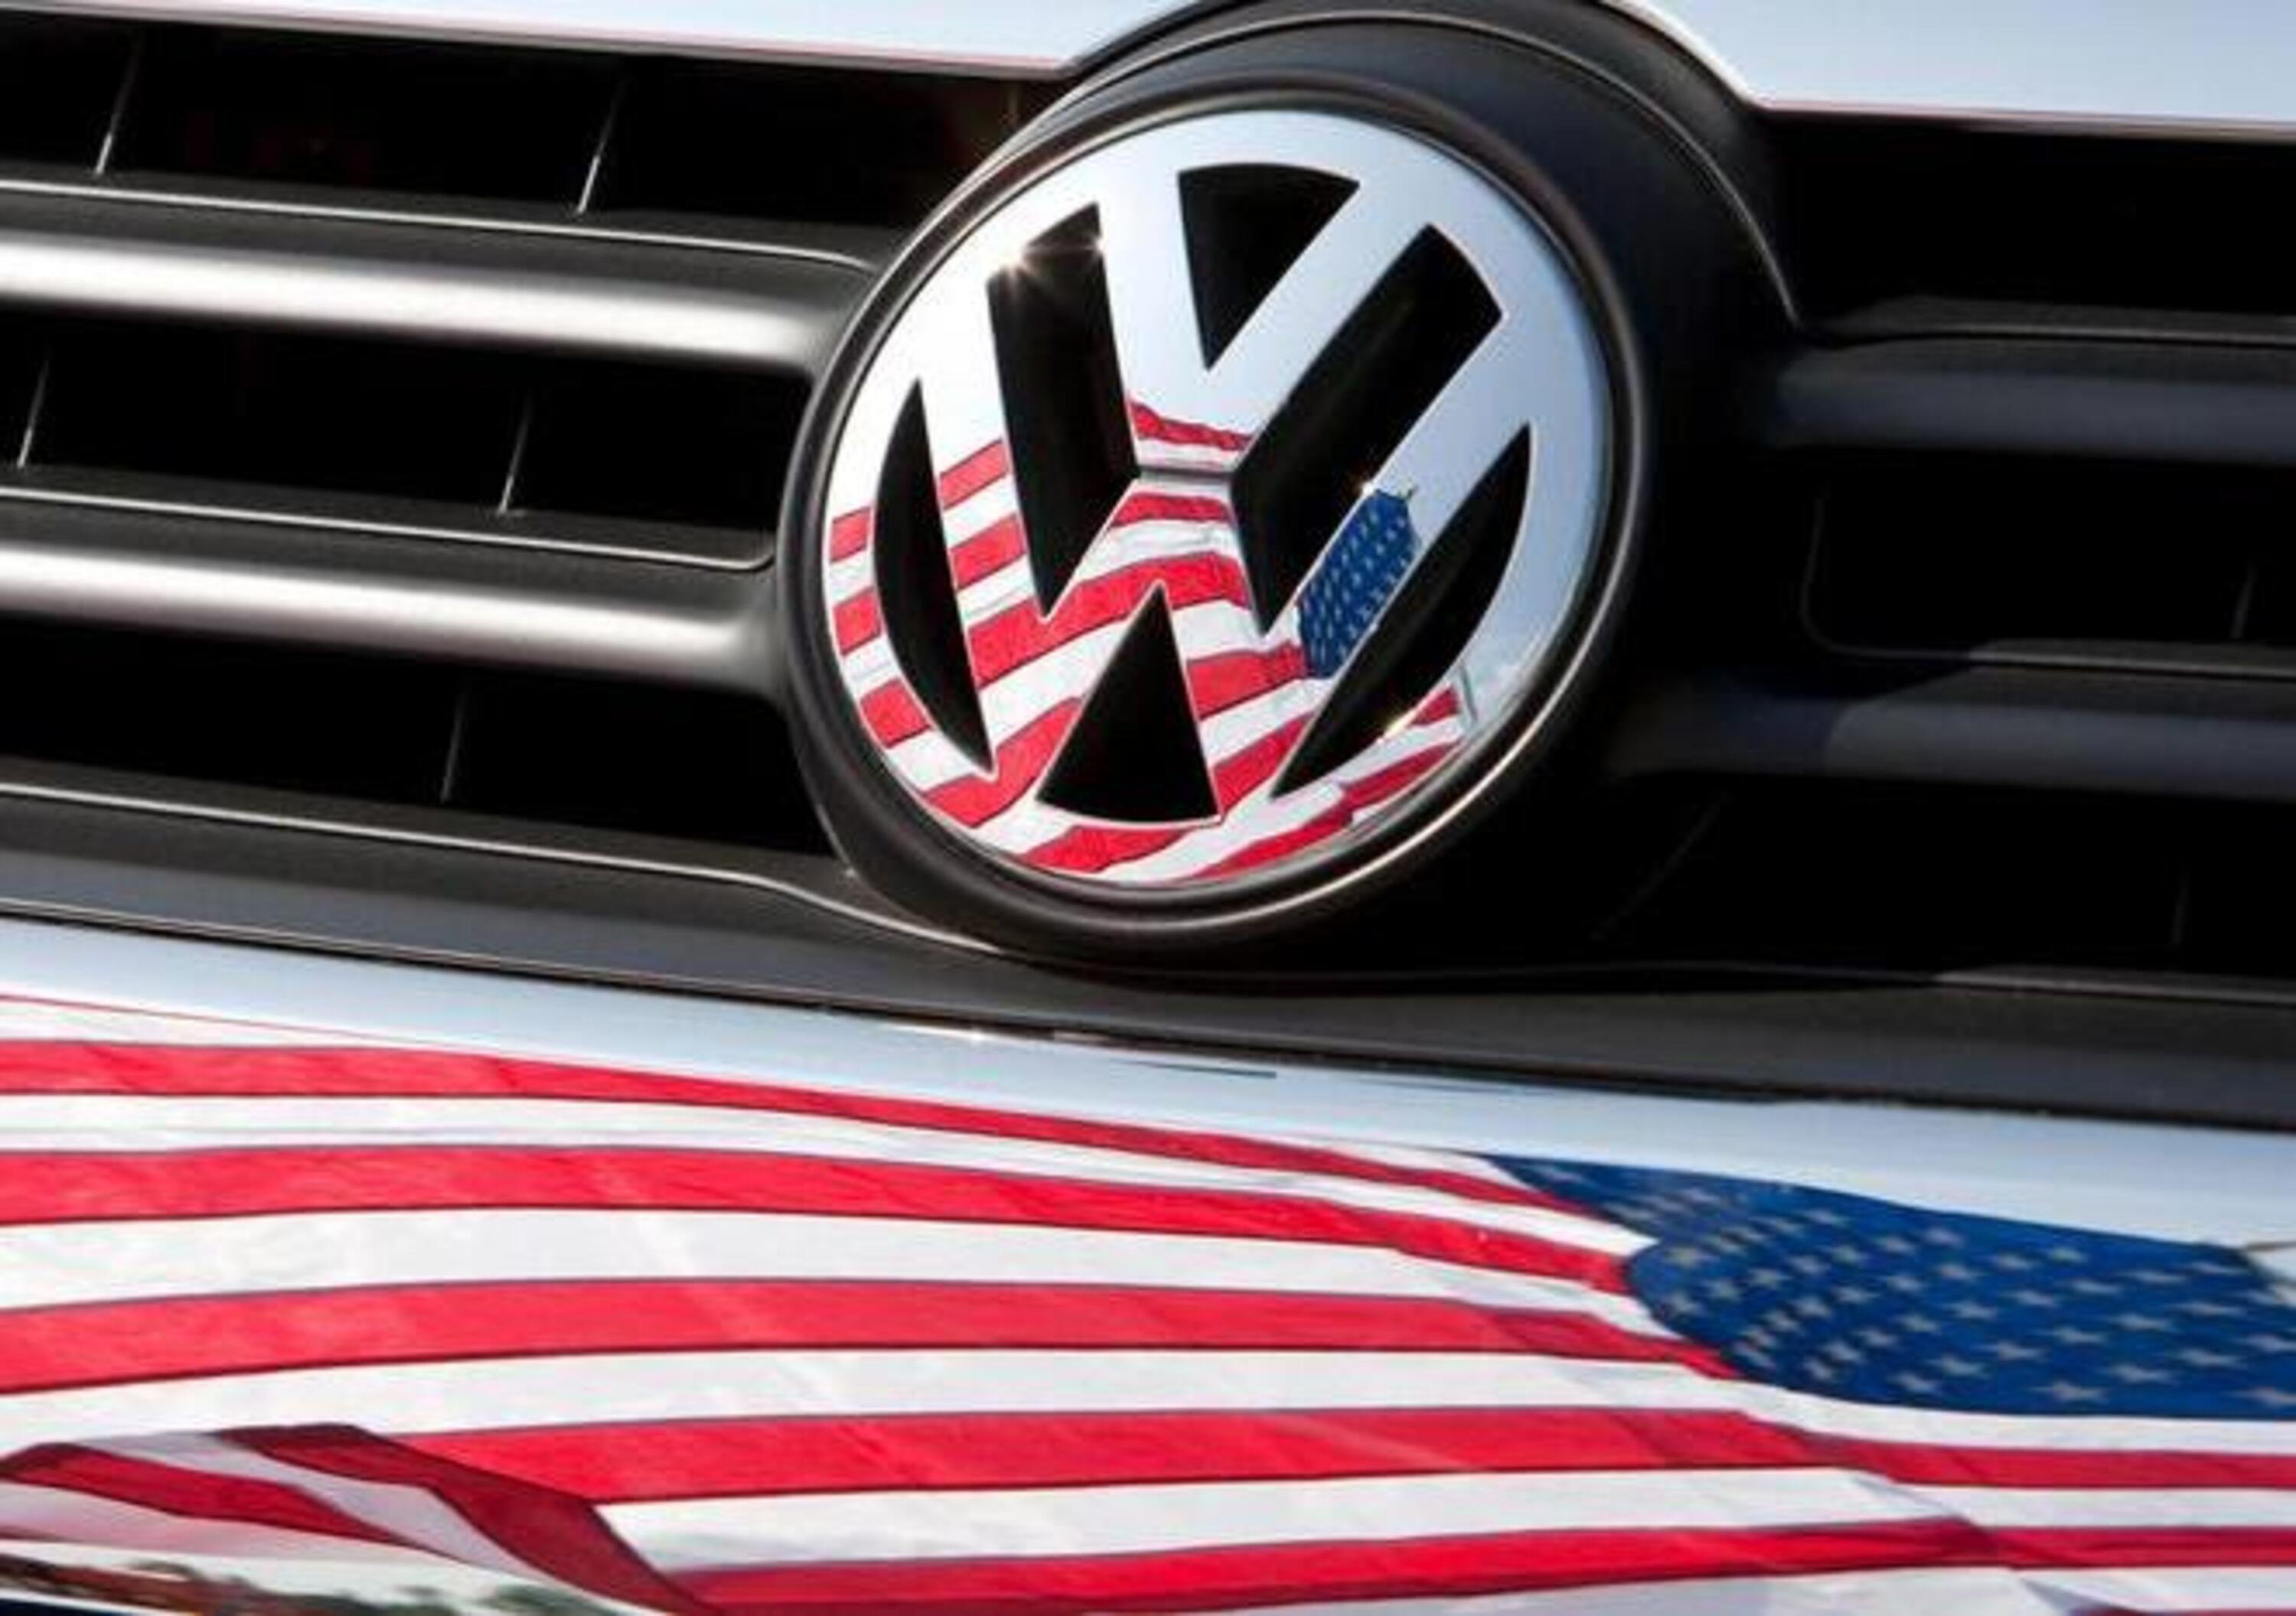 Volkswagen produrr&agrave; elettriche in America